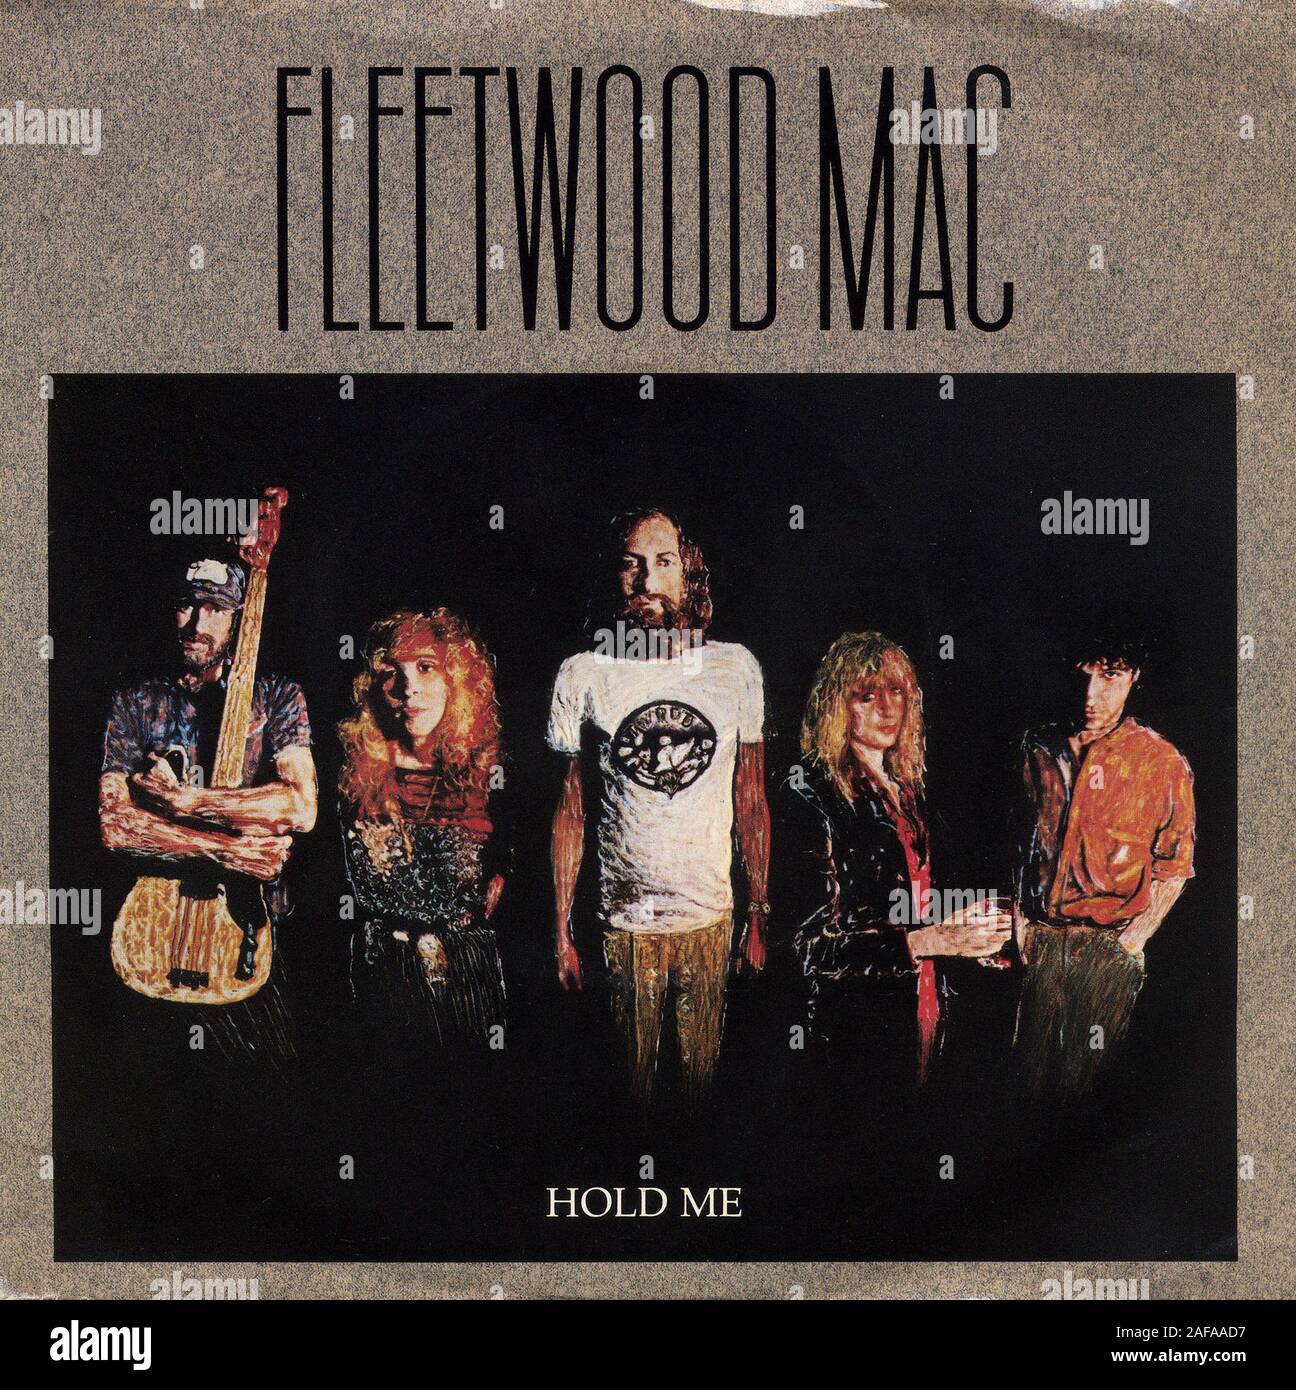 Fleetwood Mac - Hold Me - Vintage vinyl album cover Stock Photo - Alamy